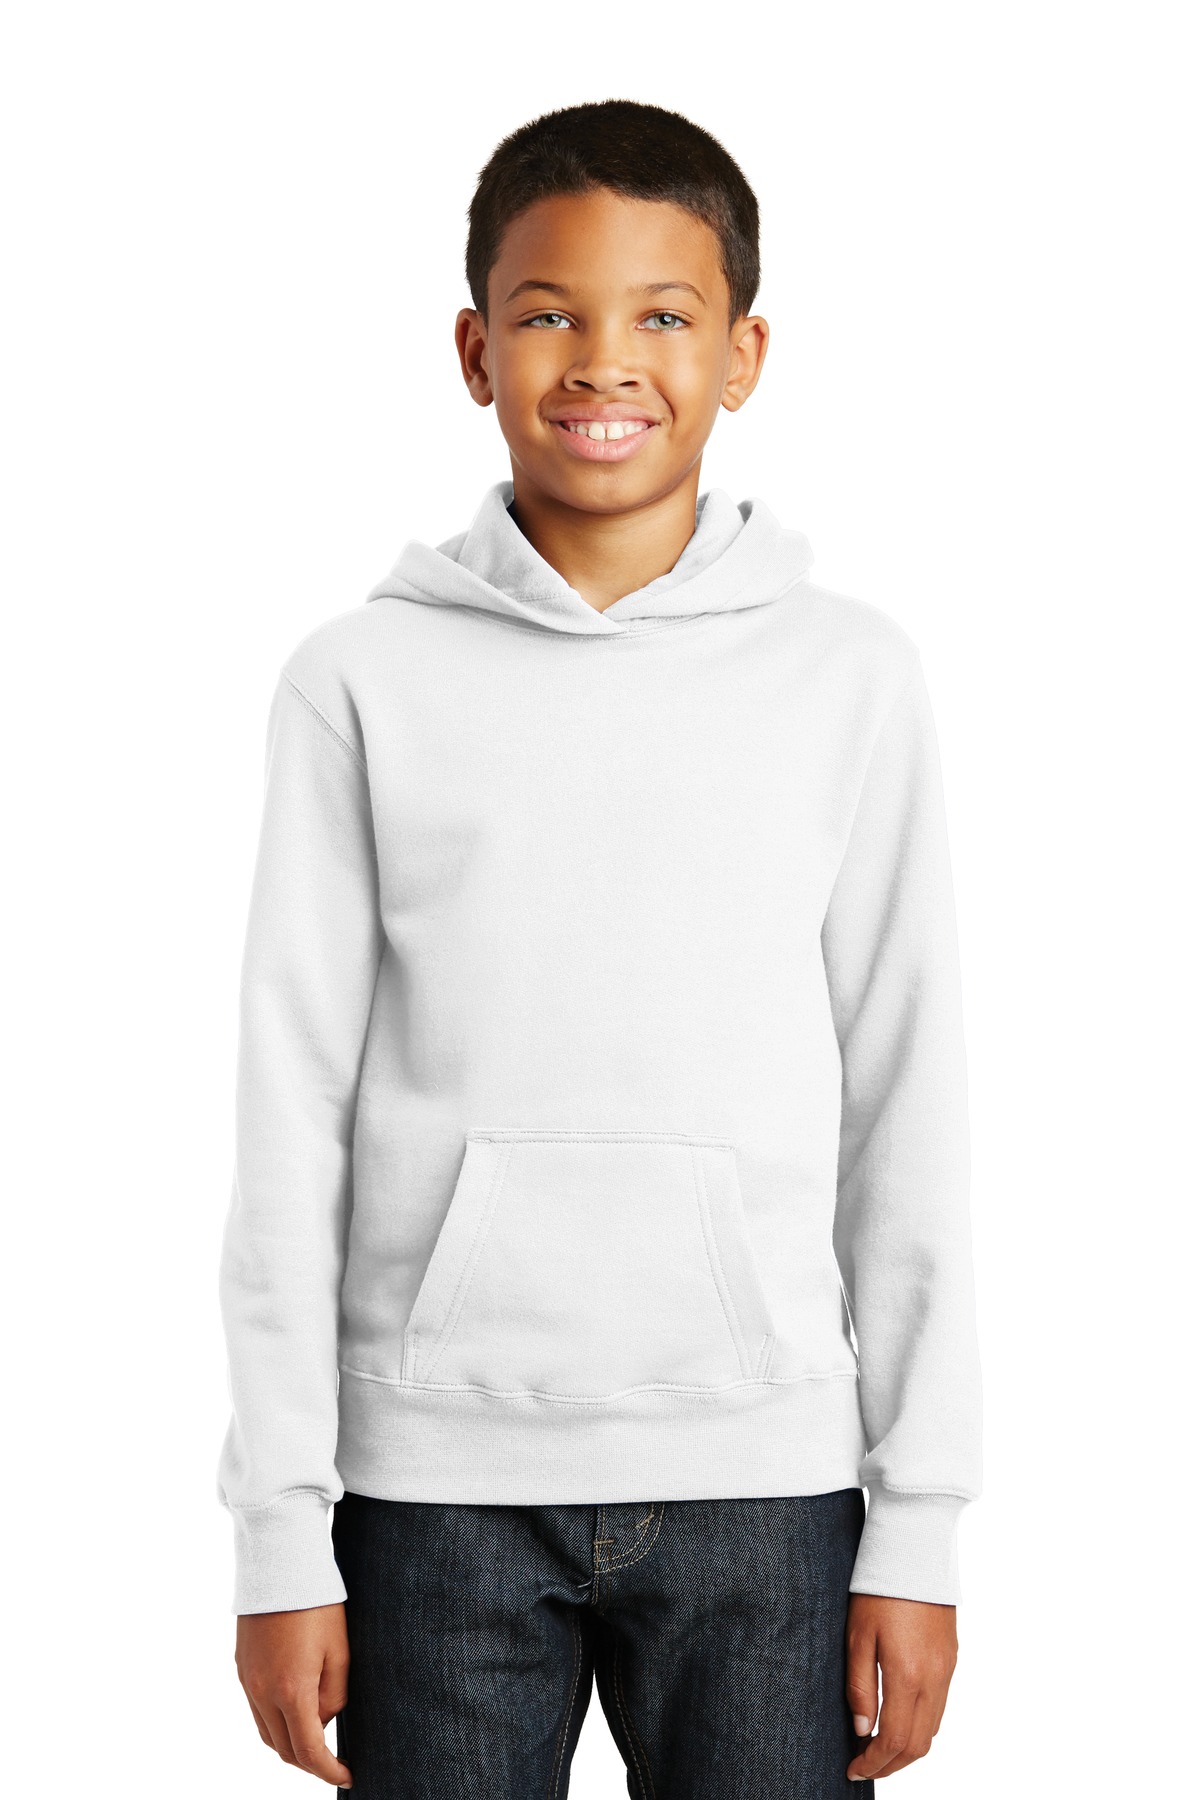 Port & Company  Youth Fan Favorite Fleece Pullover Hooded Sweatshirt. PC850YH